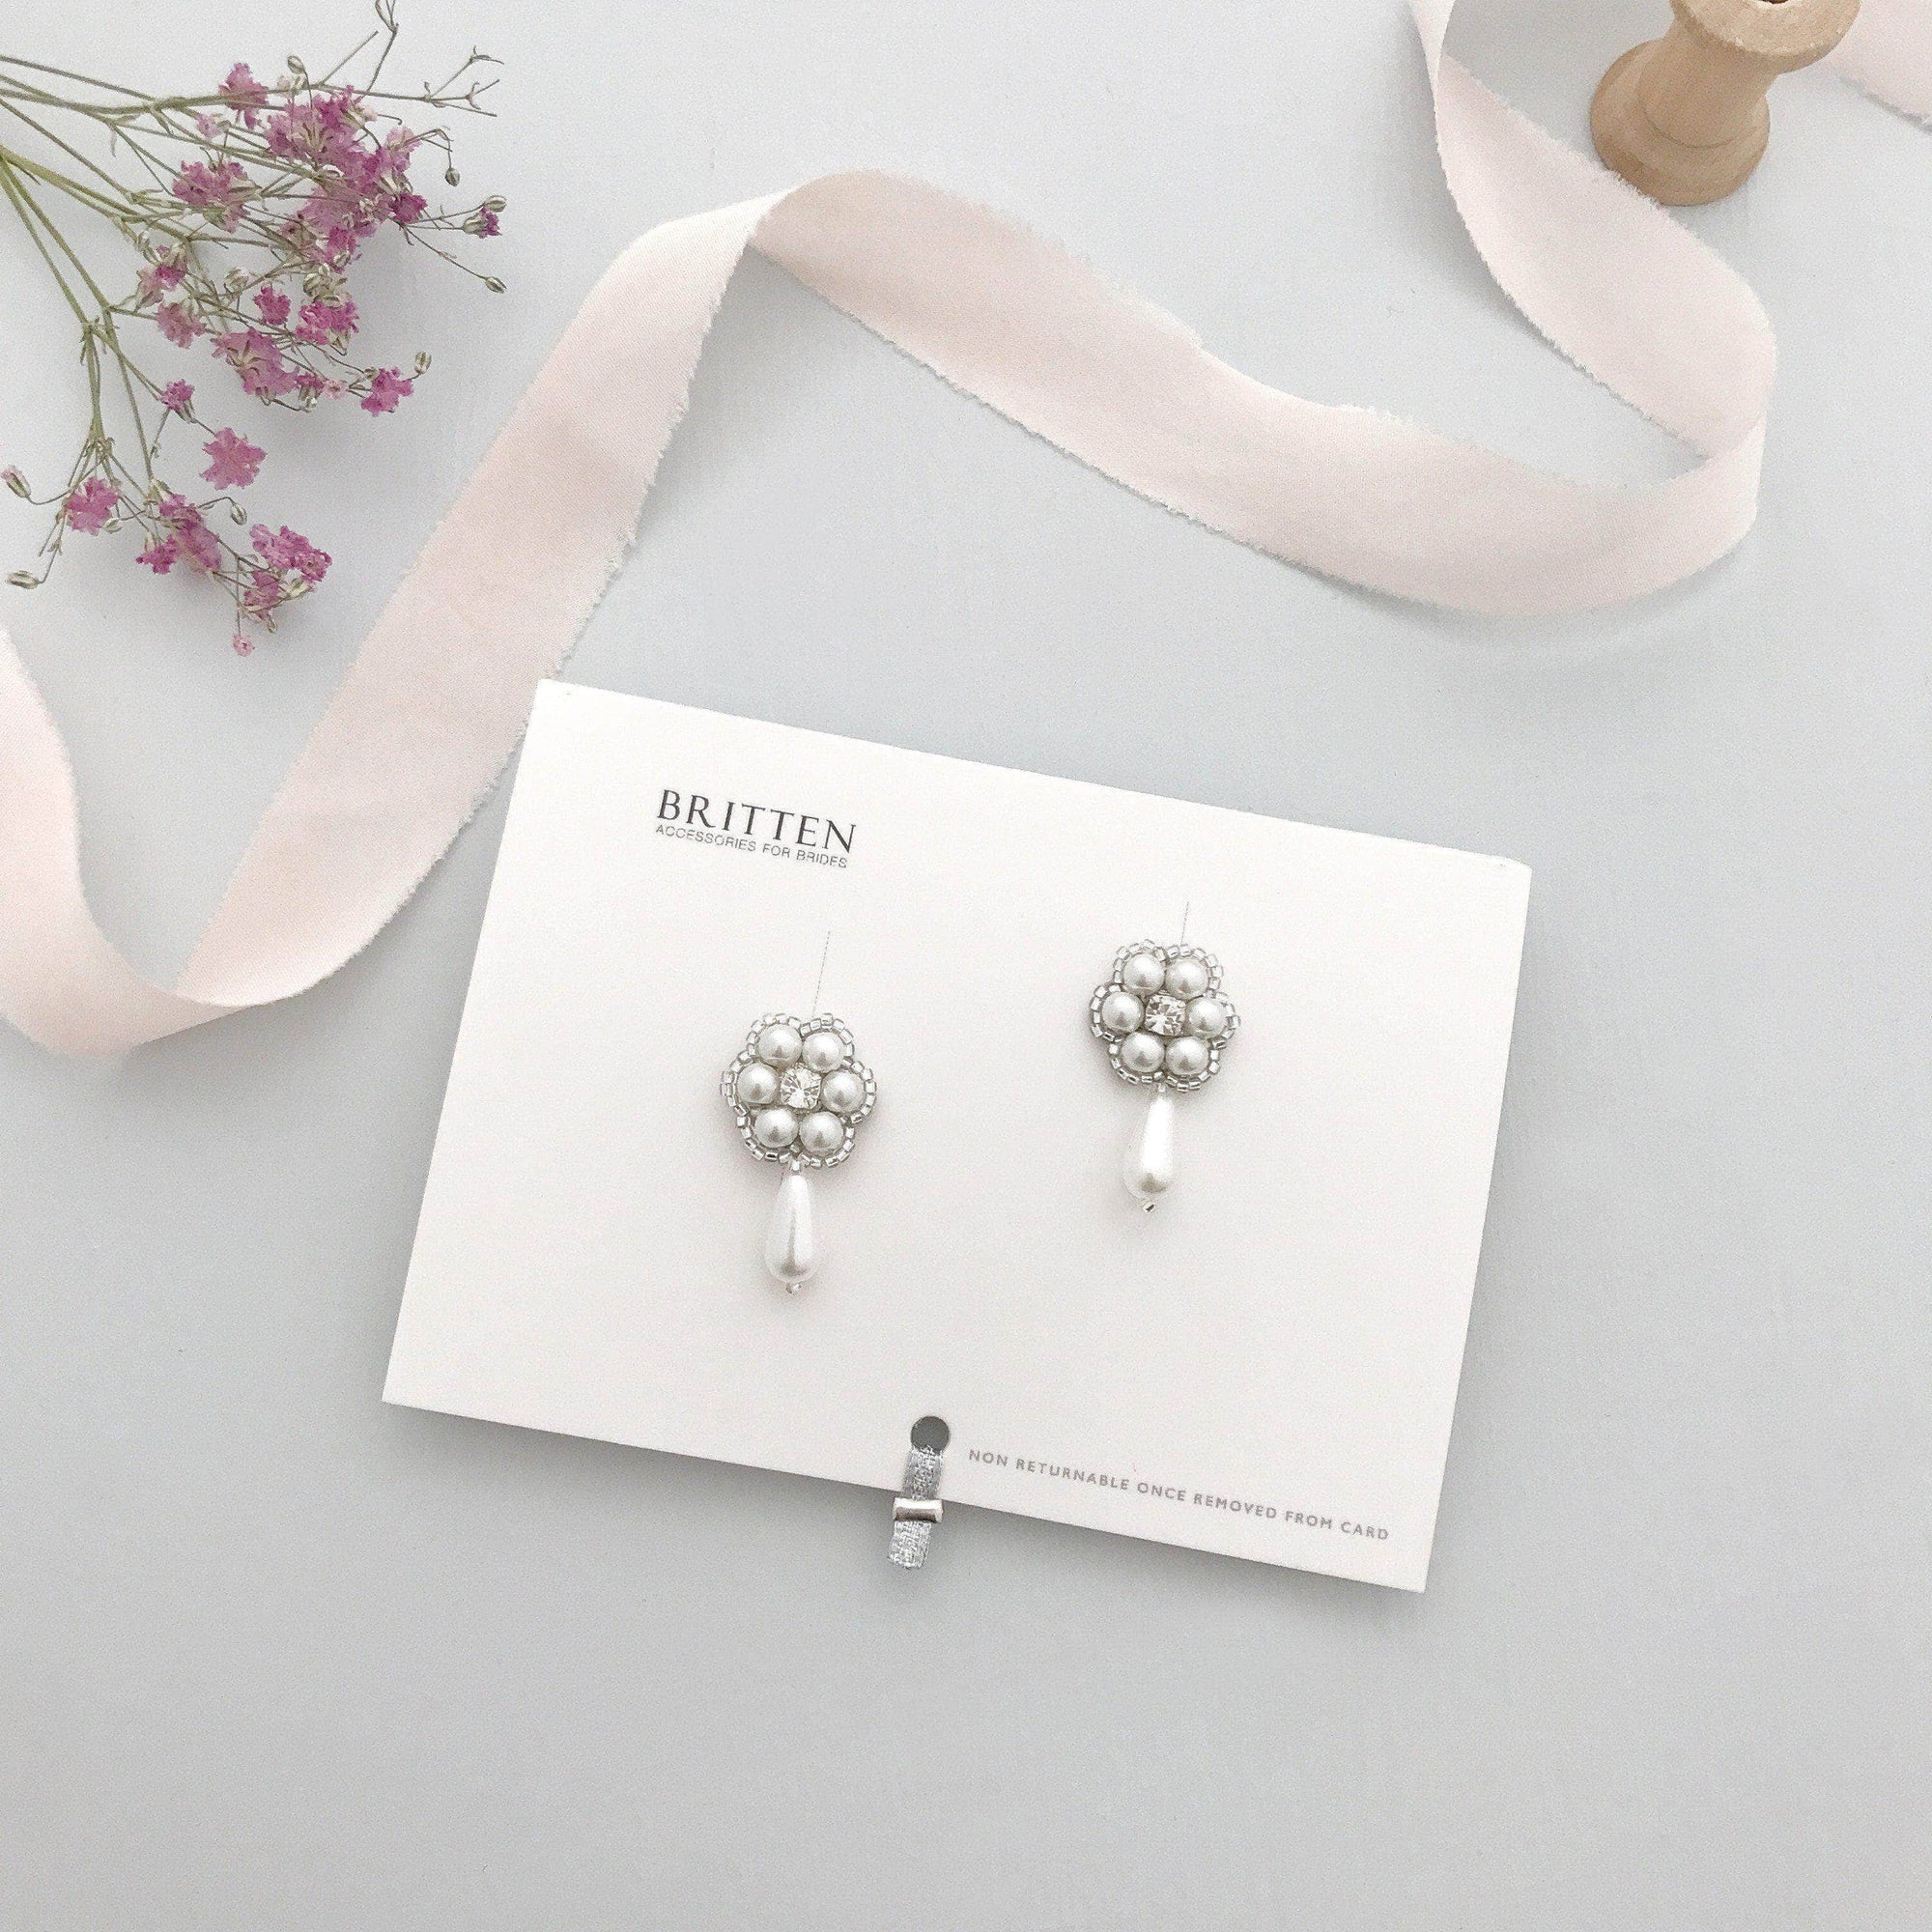 Wedding Earring Silver Flower wedding drop earrings pearl - 'Mila'